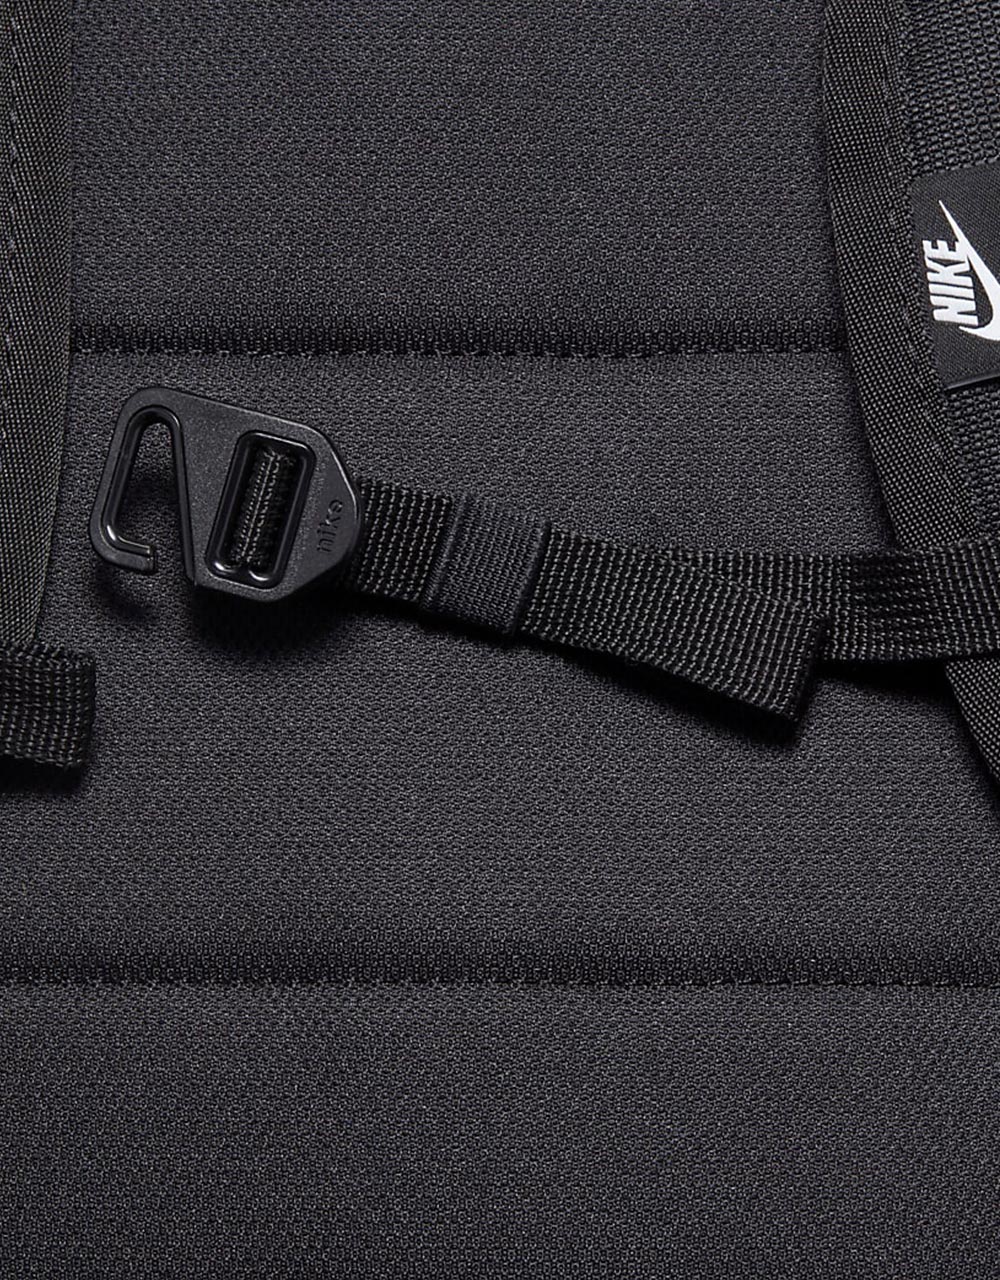 Nike Heritage Eugene Backpack - Black/Black/Black